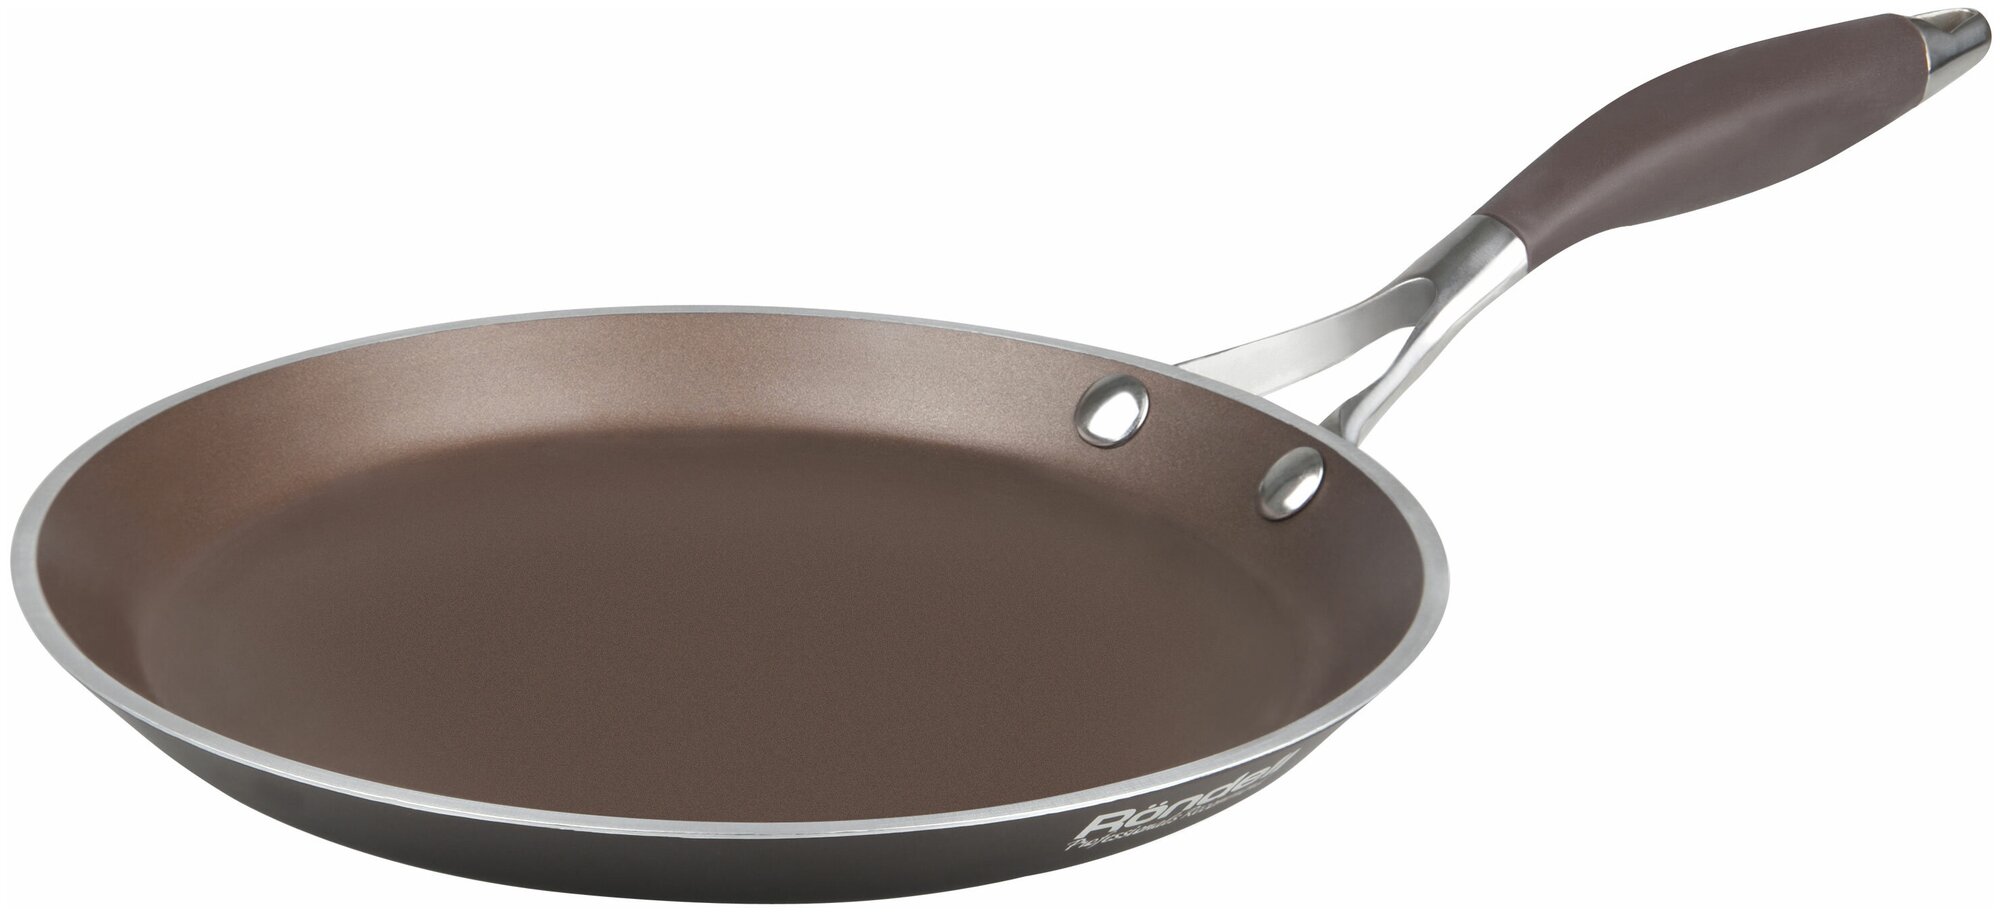 Сковорода блинная Rondell Mocco RDA-136 22 см кофейно-коричневый